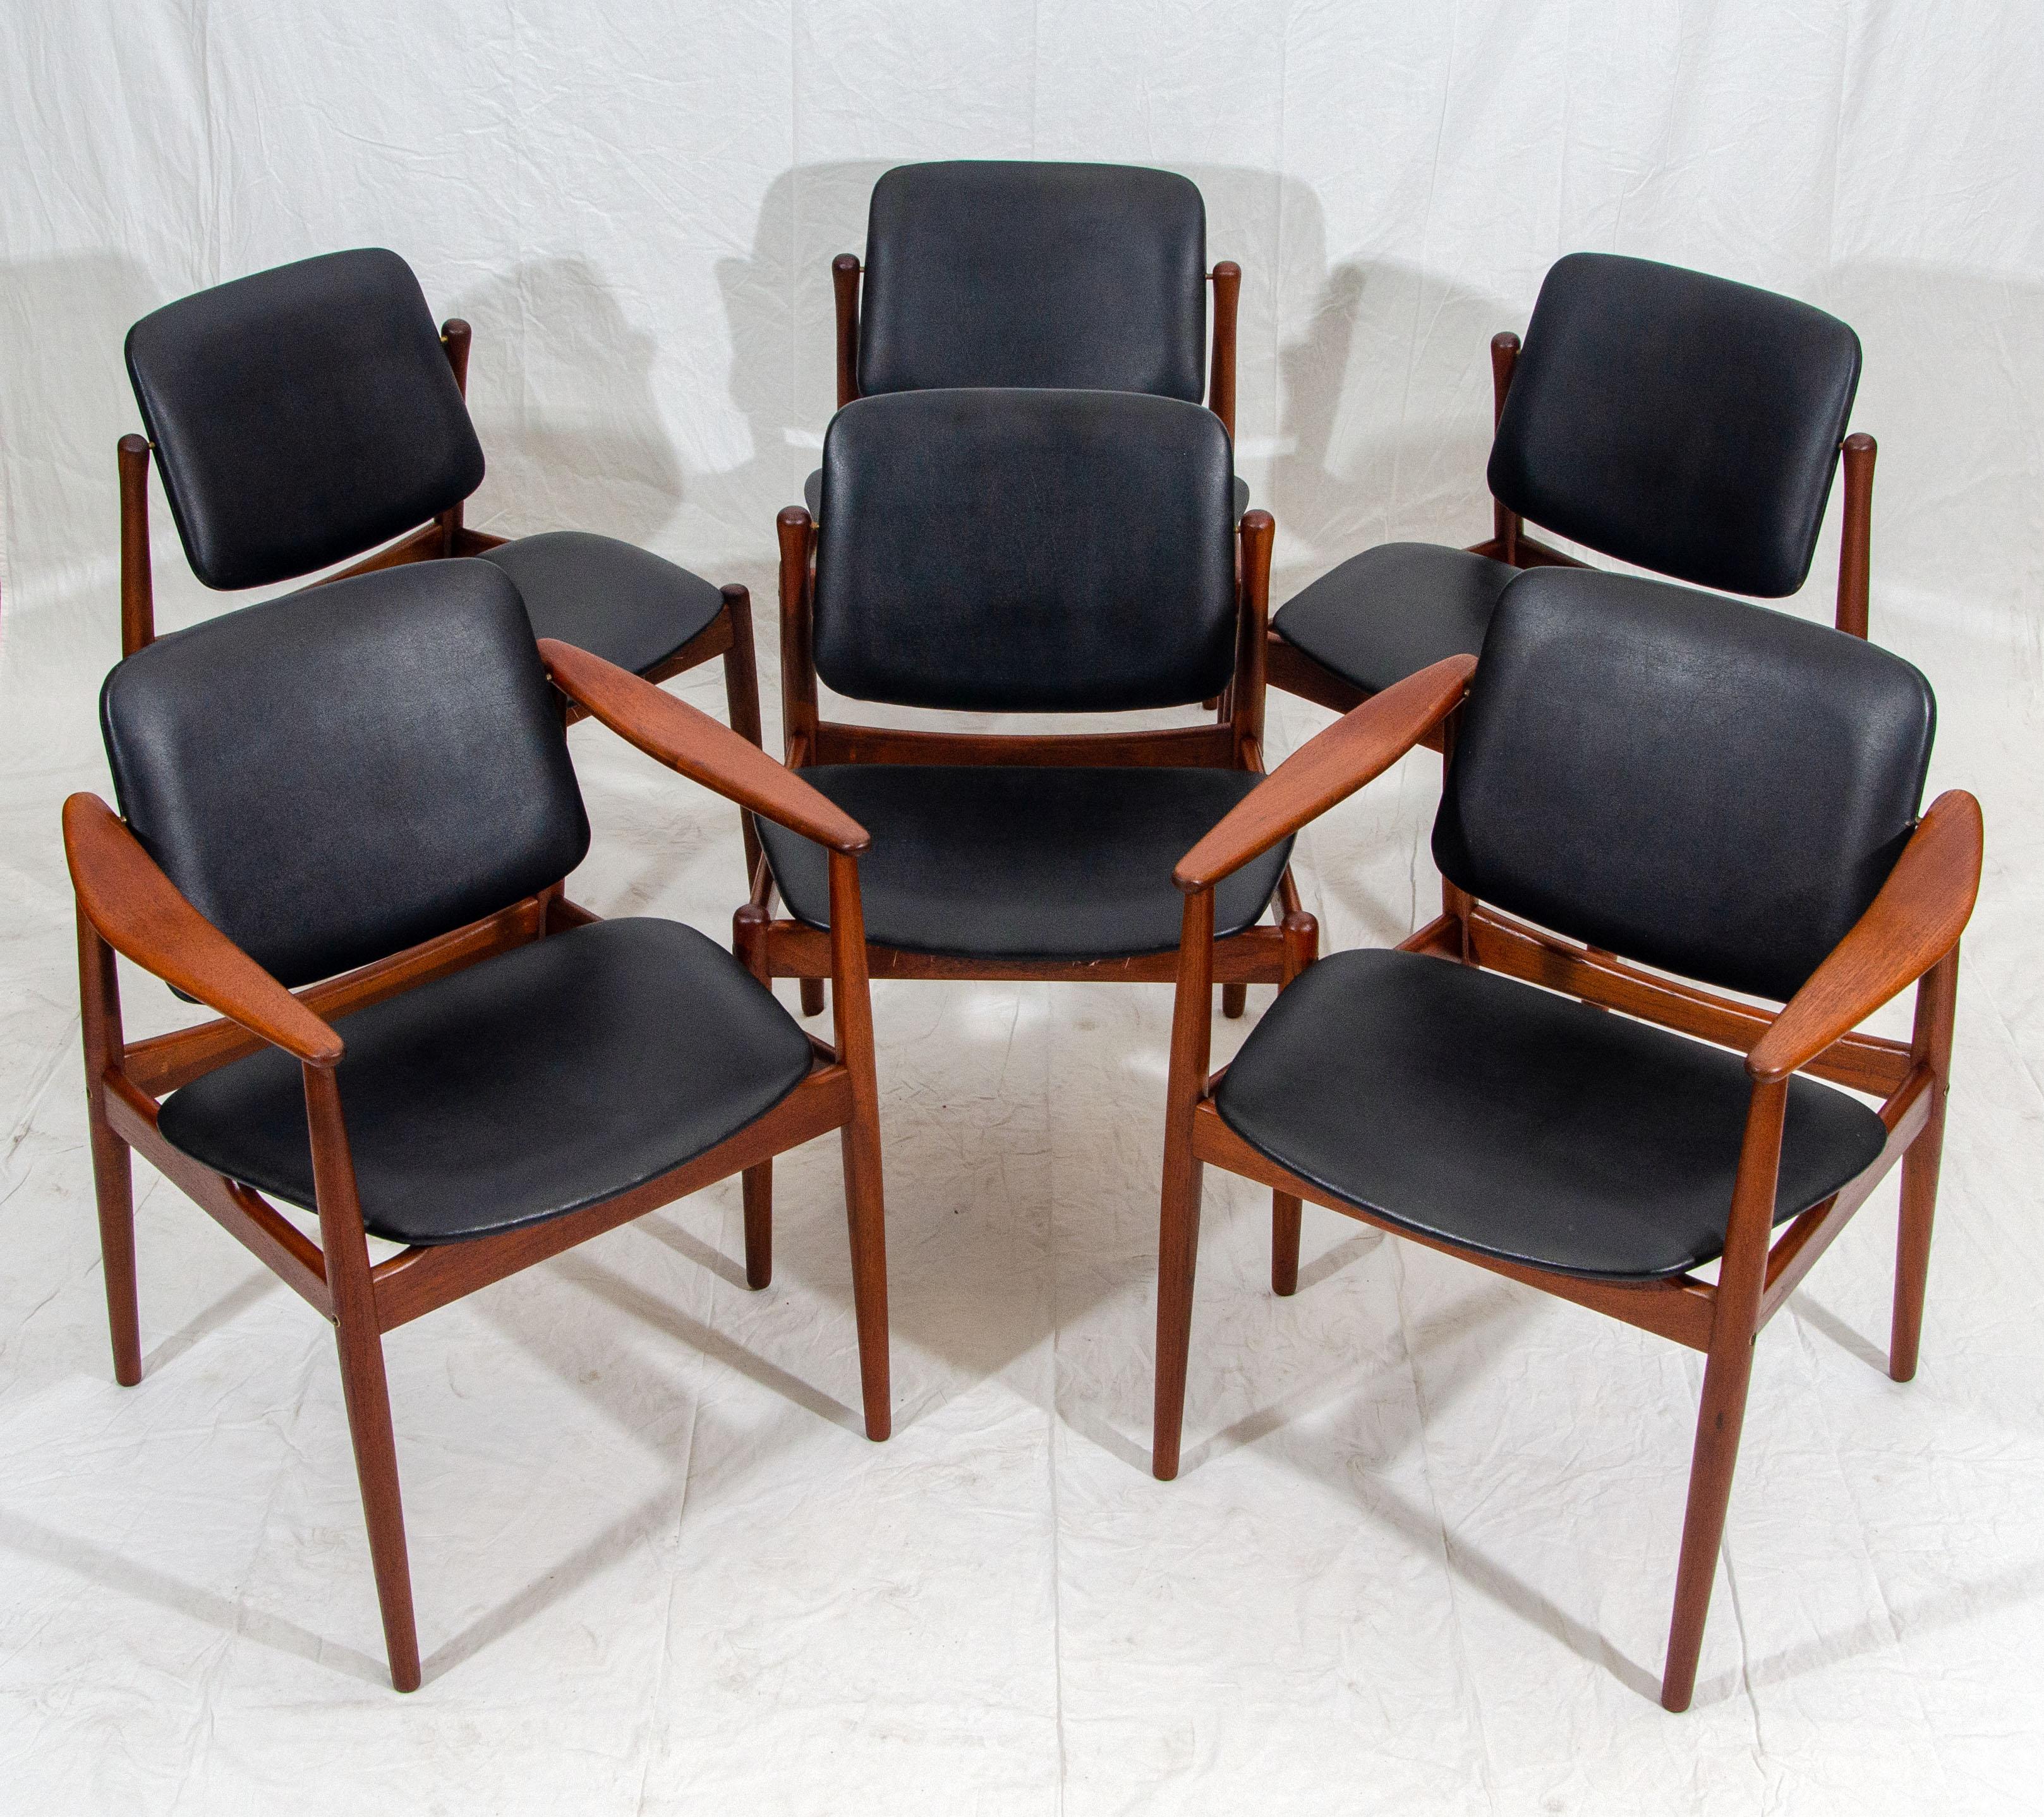 Scandinavian Modern Set of Six Danish Teak Dining Chairs by Arne Vodder for Bovirke, BO92